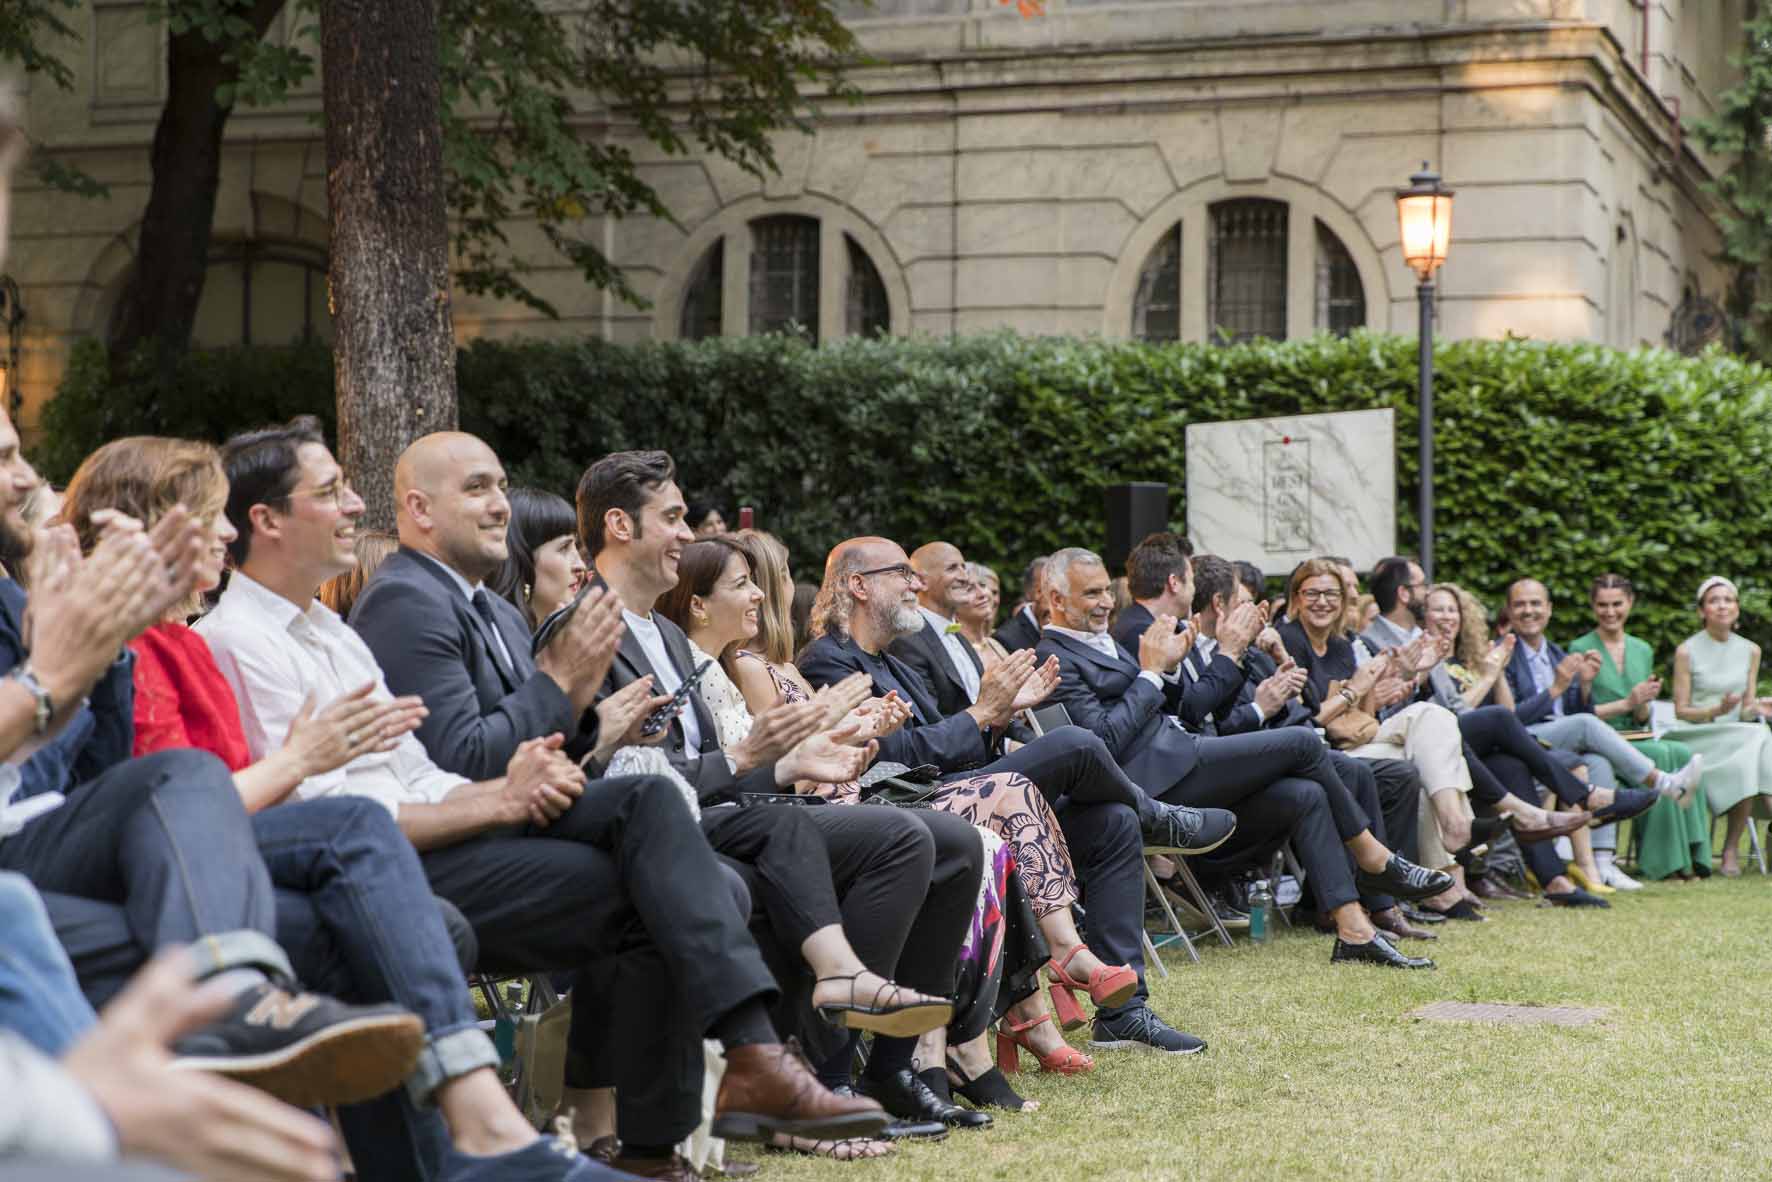 convocatoria: IED Design Awards 2019 – premios al mejor diseño y creatividad – Jardines Embajada Italia 20 junio 19:30h